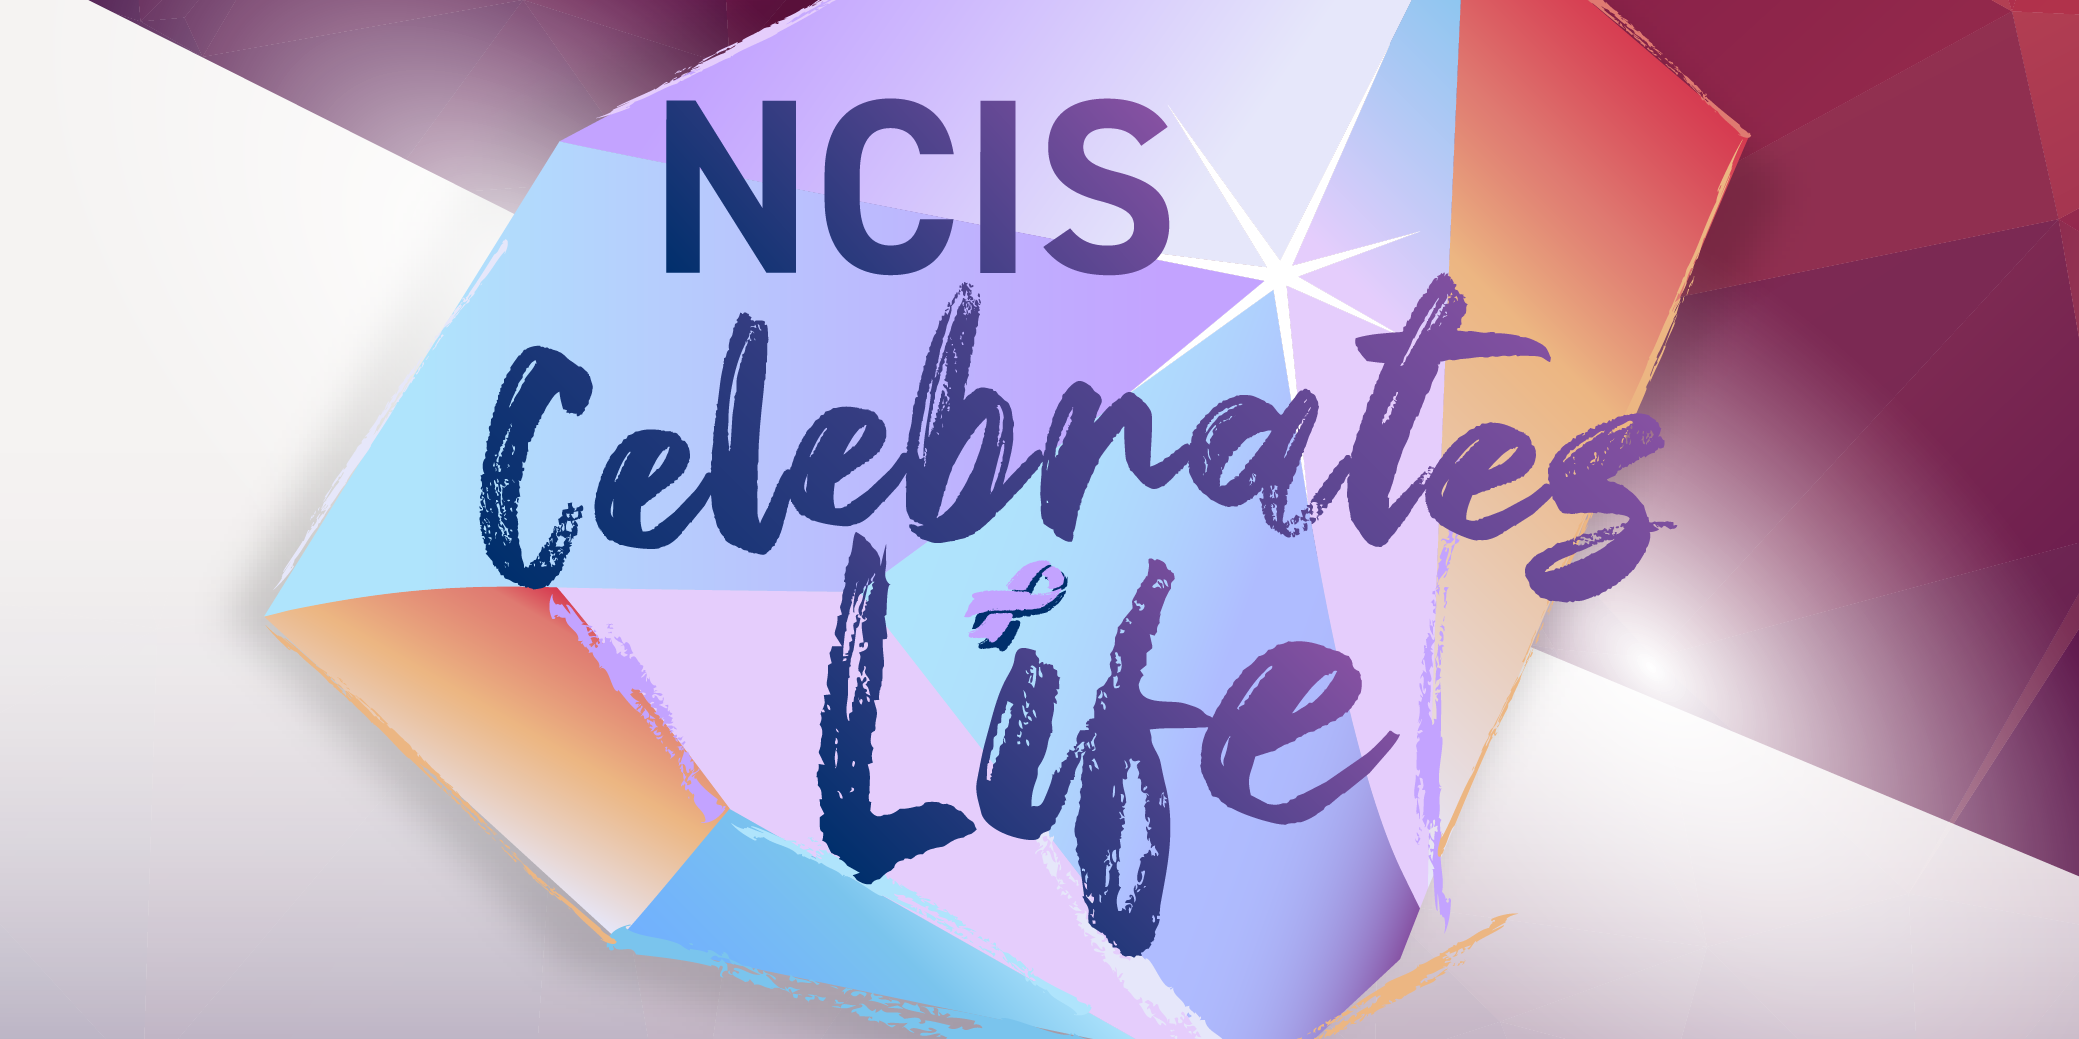 National University Cancer Institute, Singapore (NCIS) Celebrates Life